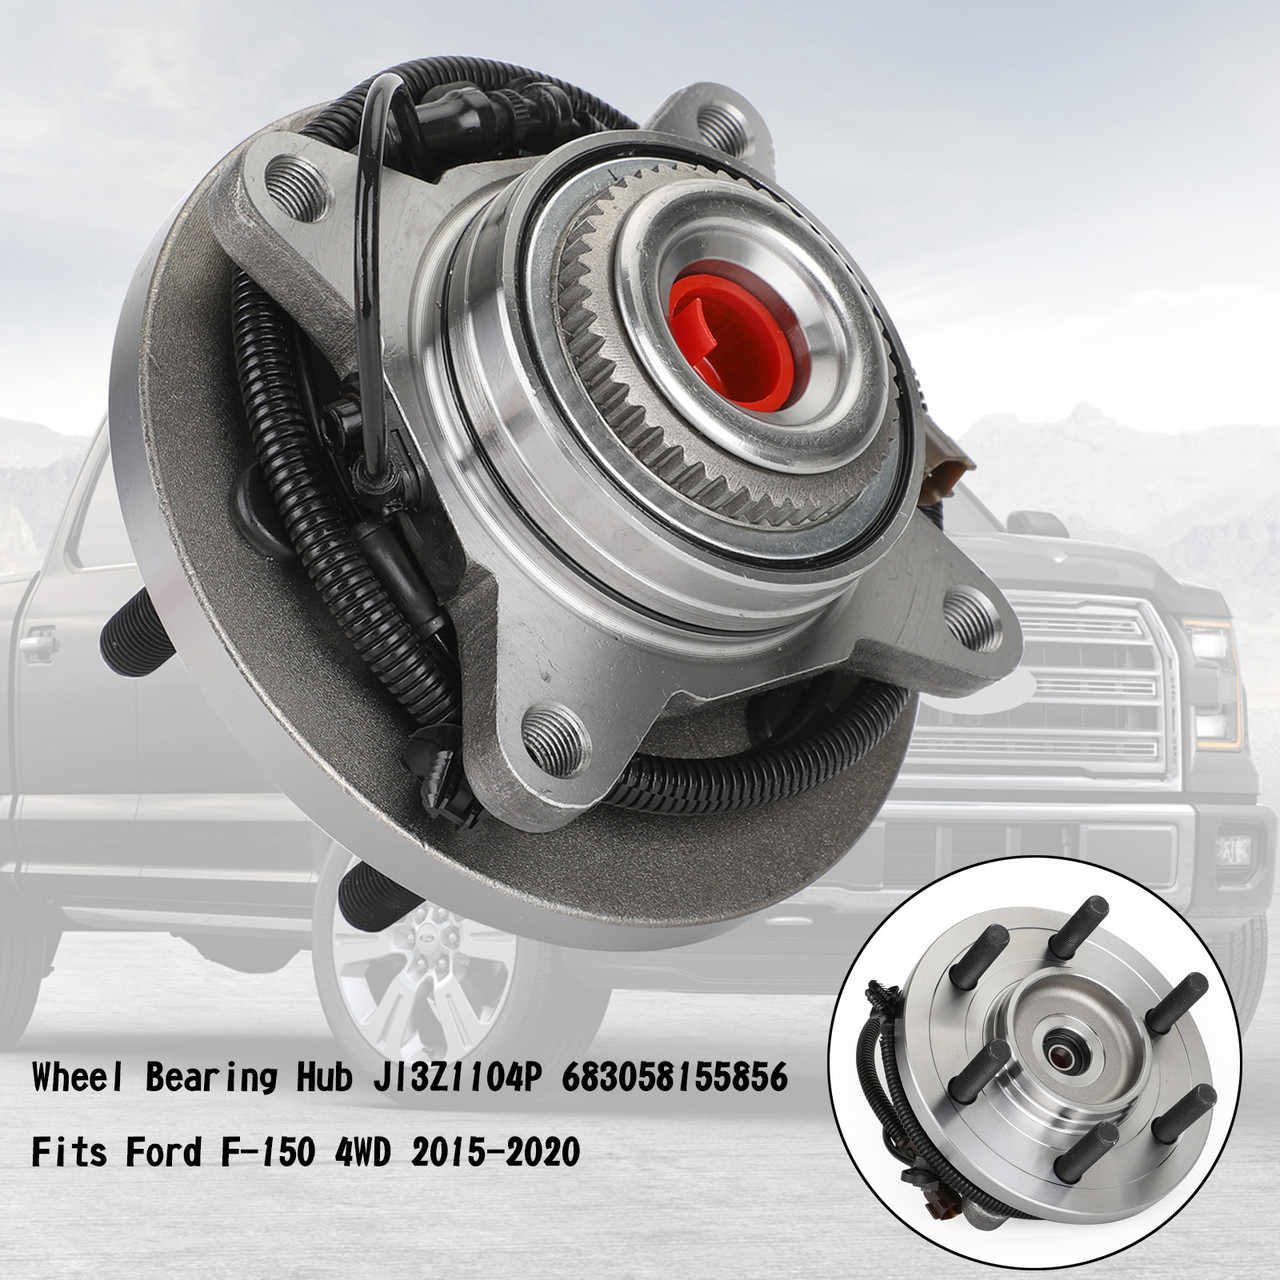 Wheel Bearing Hub Jl3Z1104P 683058155856 Fits Ford F-150 4WD 2015-2020